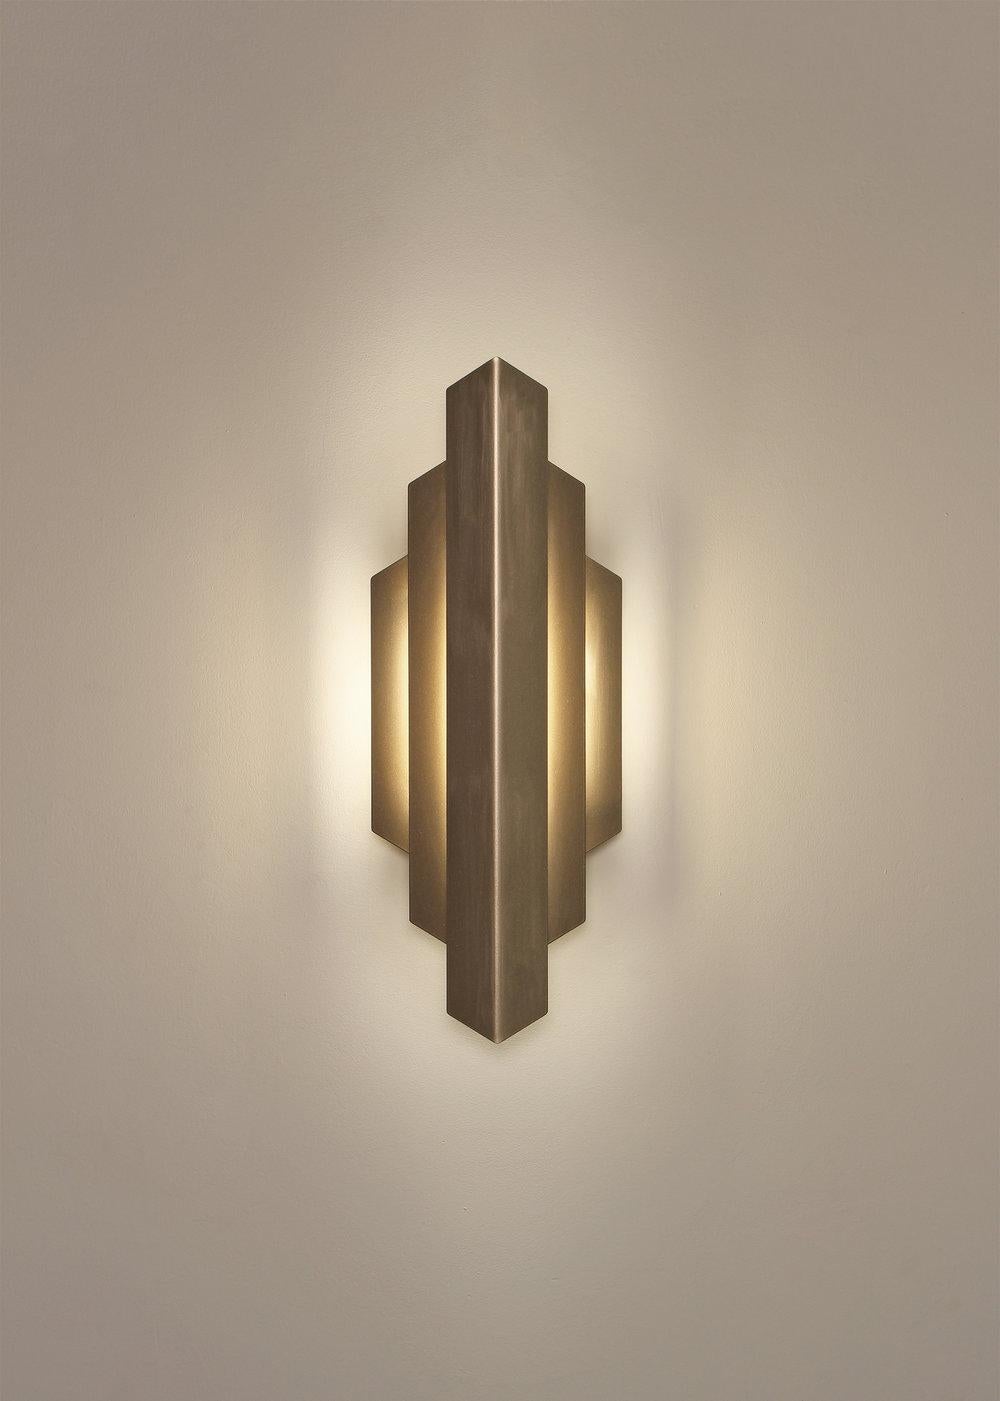 Die Deko-Leuchte taucht die Wand in ein sanftes, indirektes Licht. Seine markante Form wurde von den kühnen, geometrischen Linien inspiriert, die die Art-Déco-Bewegung prägten. Die Deco-Leuchte bietet eine weiche, akzentuierte Beleuchtung für einen